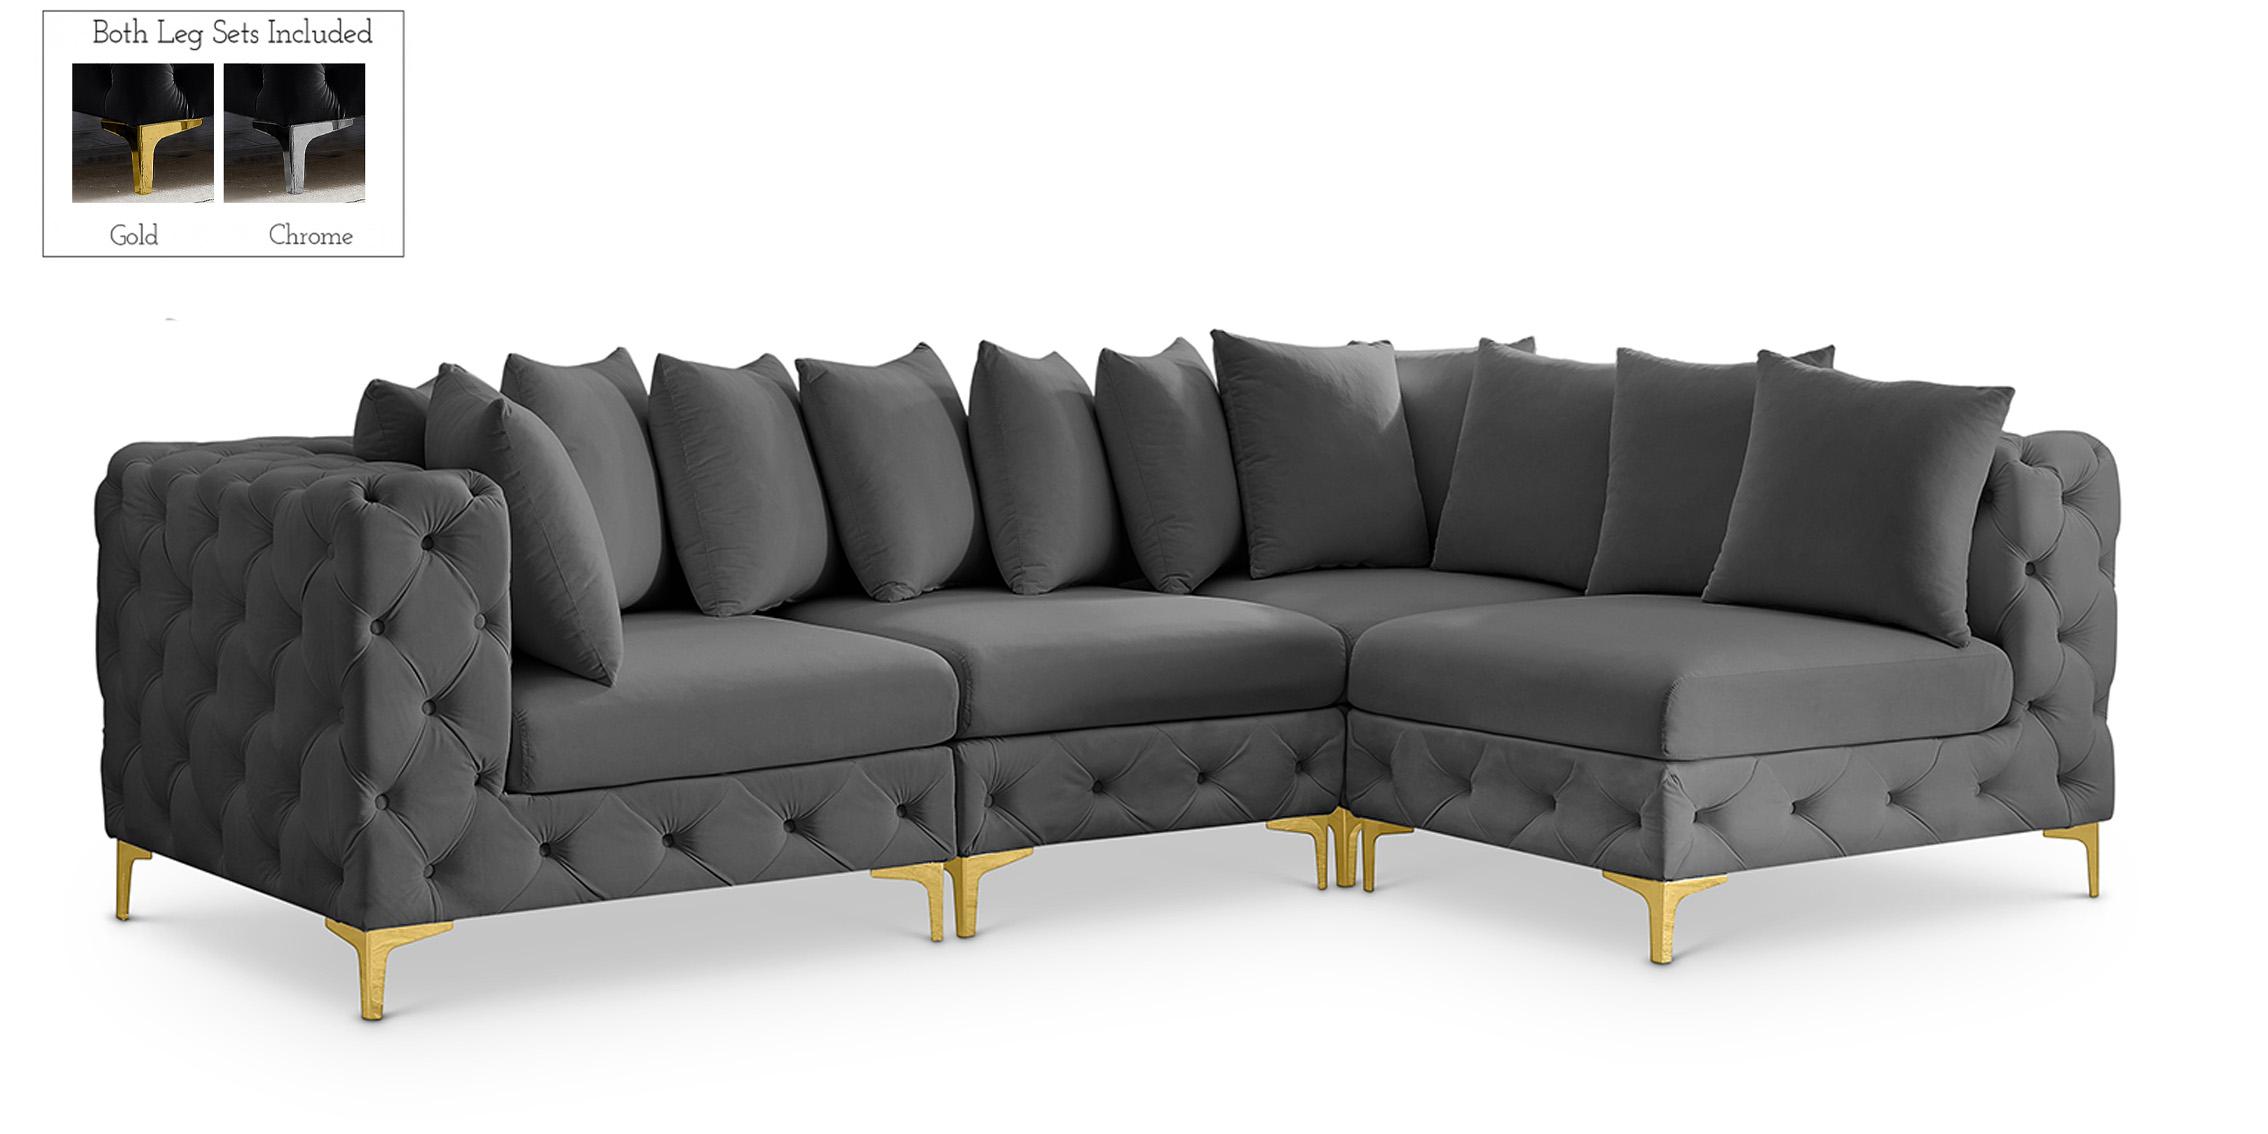 Contemporary Modular Sectional Sofa TREMBLAY 686Grey-Sec4A 686Grey-Sec4A in Gray Velvet